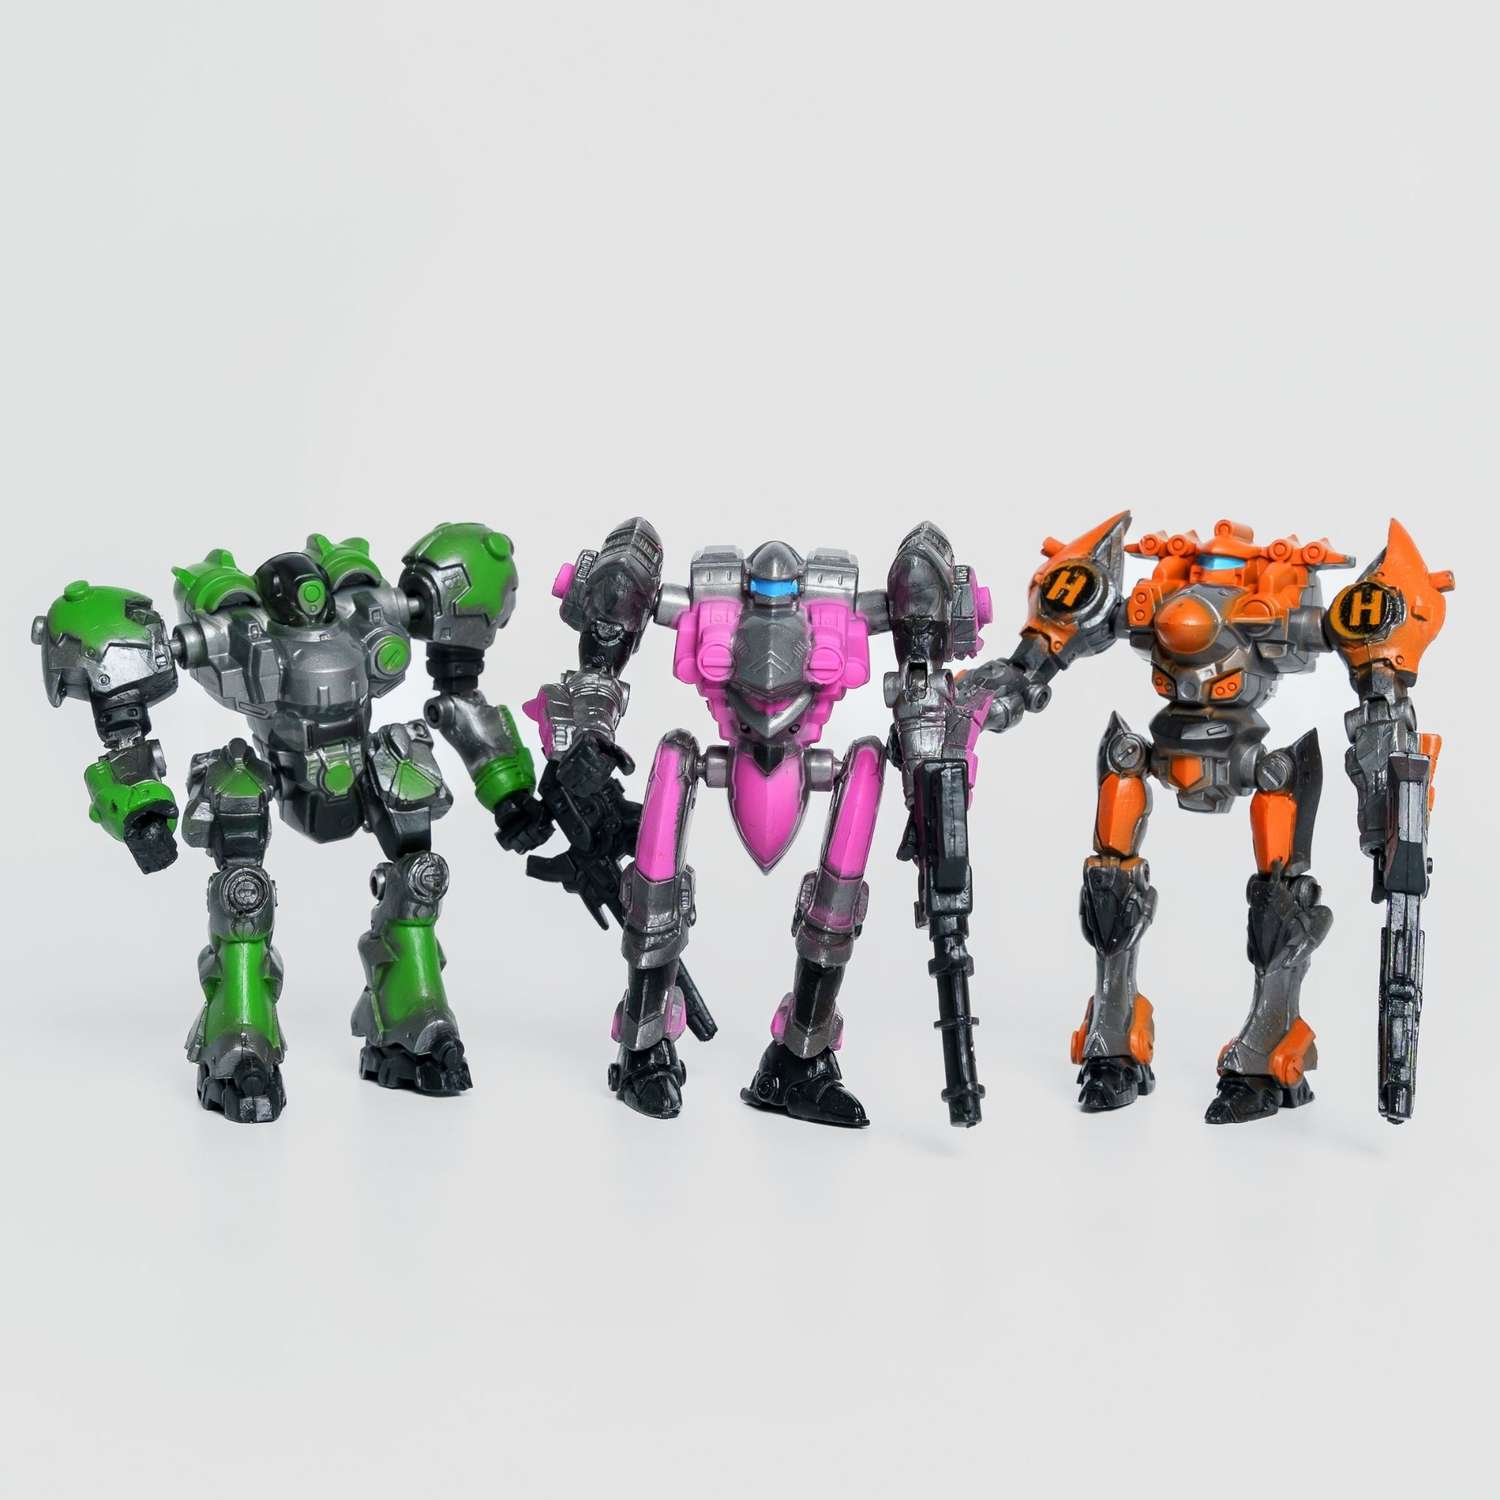 Роботы CyberCode 3 фигурки игрушки для детей развивающие пластиковые коллекционные интересные. 8см - фото 2